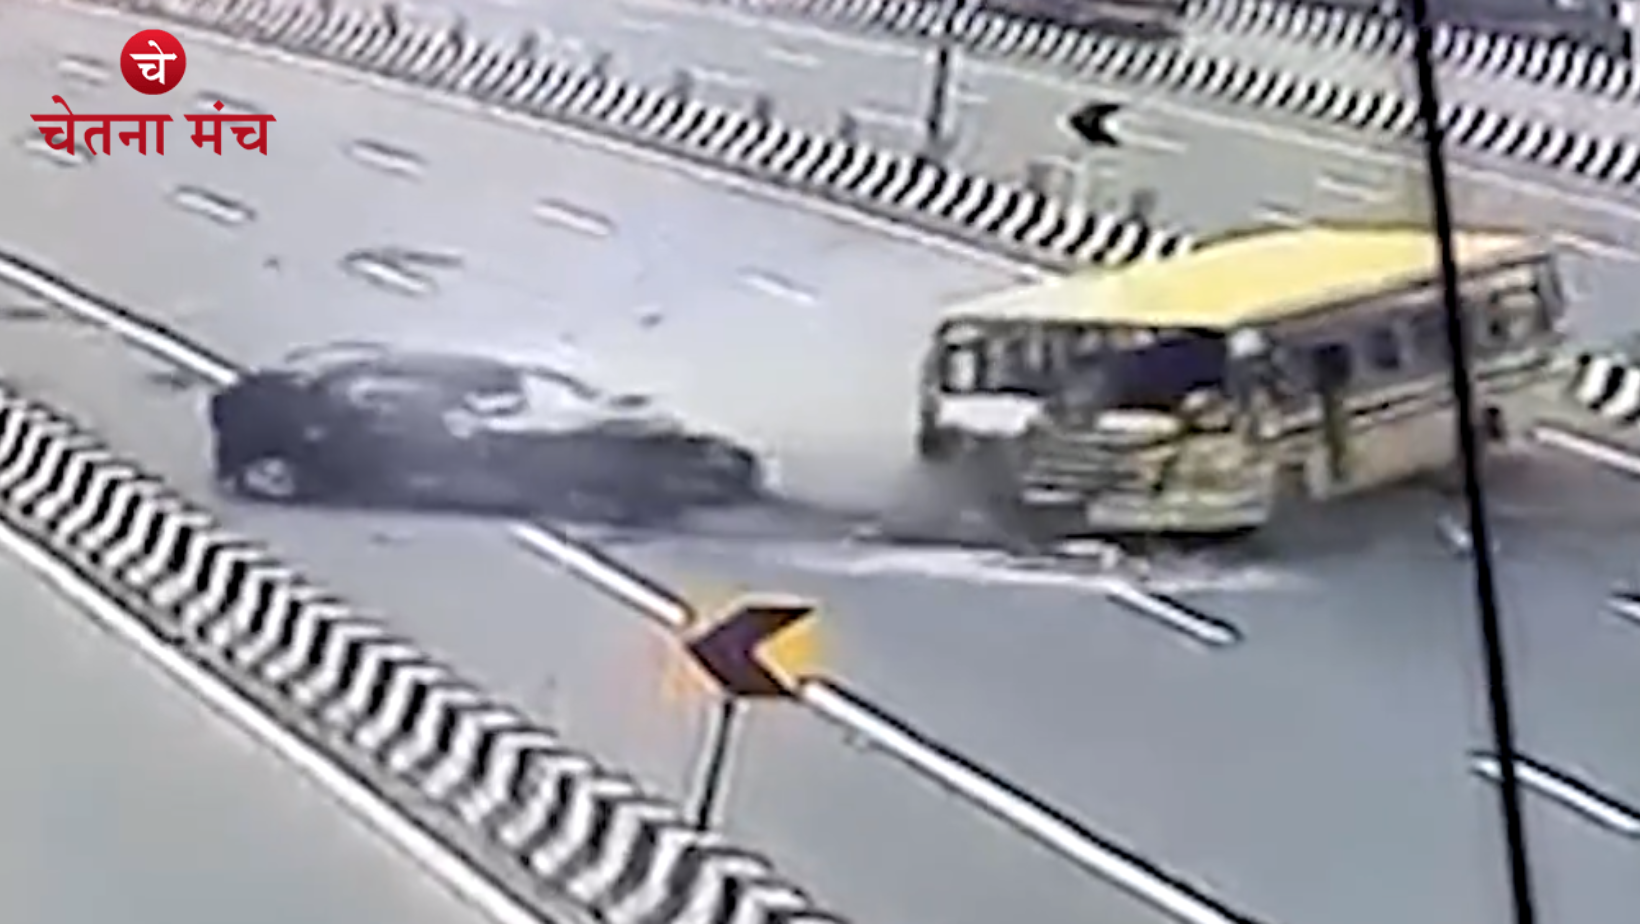 Breaking News: दिल दहला देने वाला विडियो, भीषण सड़क हादसा दिल्ली-मेरठ एक्सप्रेस पे, गाड़ी के उड़े परखच्चे, 6 लोगों की मौत – देखिये पूरा विडियो